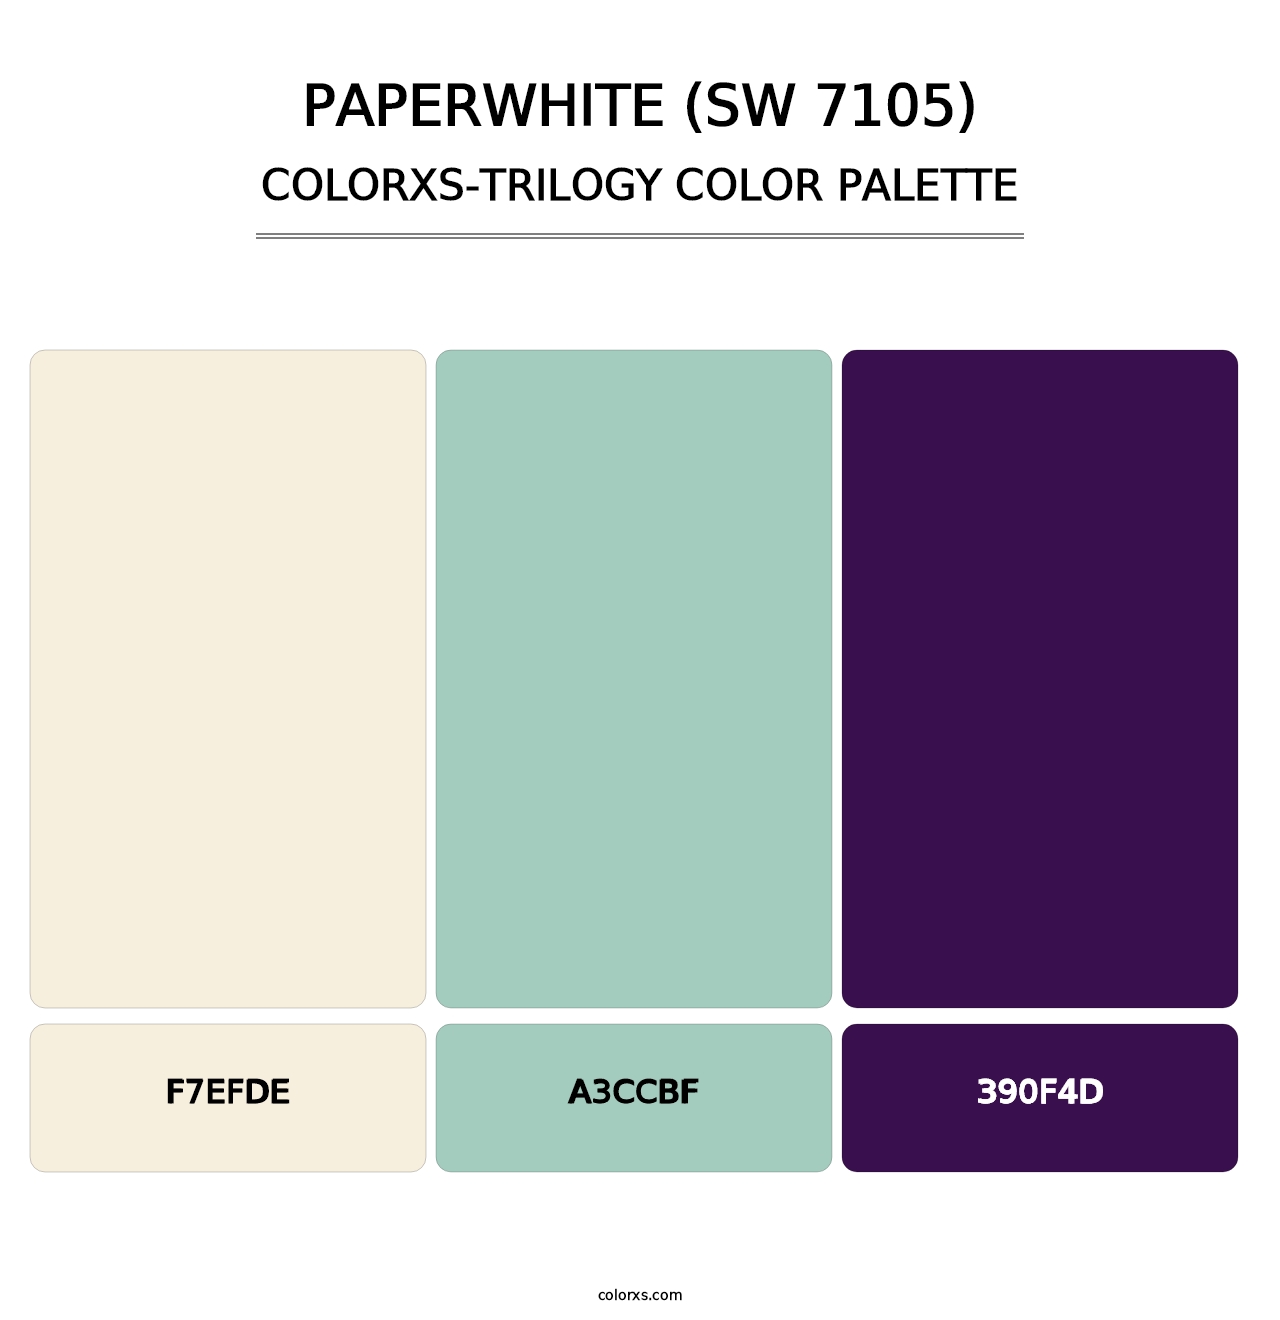 Paperwhite (SW 7105) - Colorxs Trilogy Palette